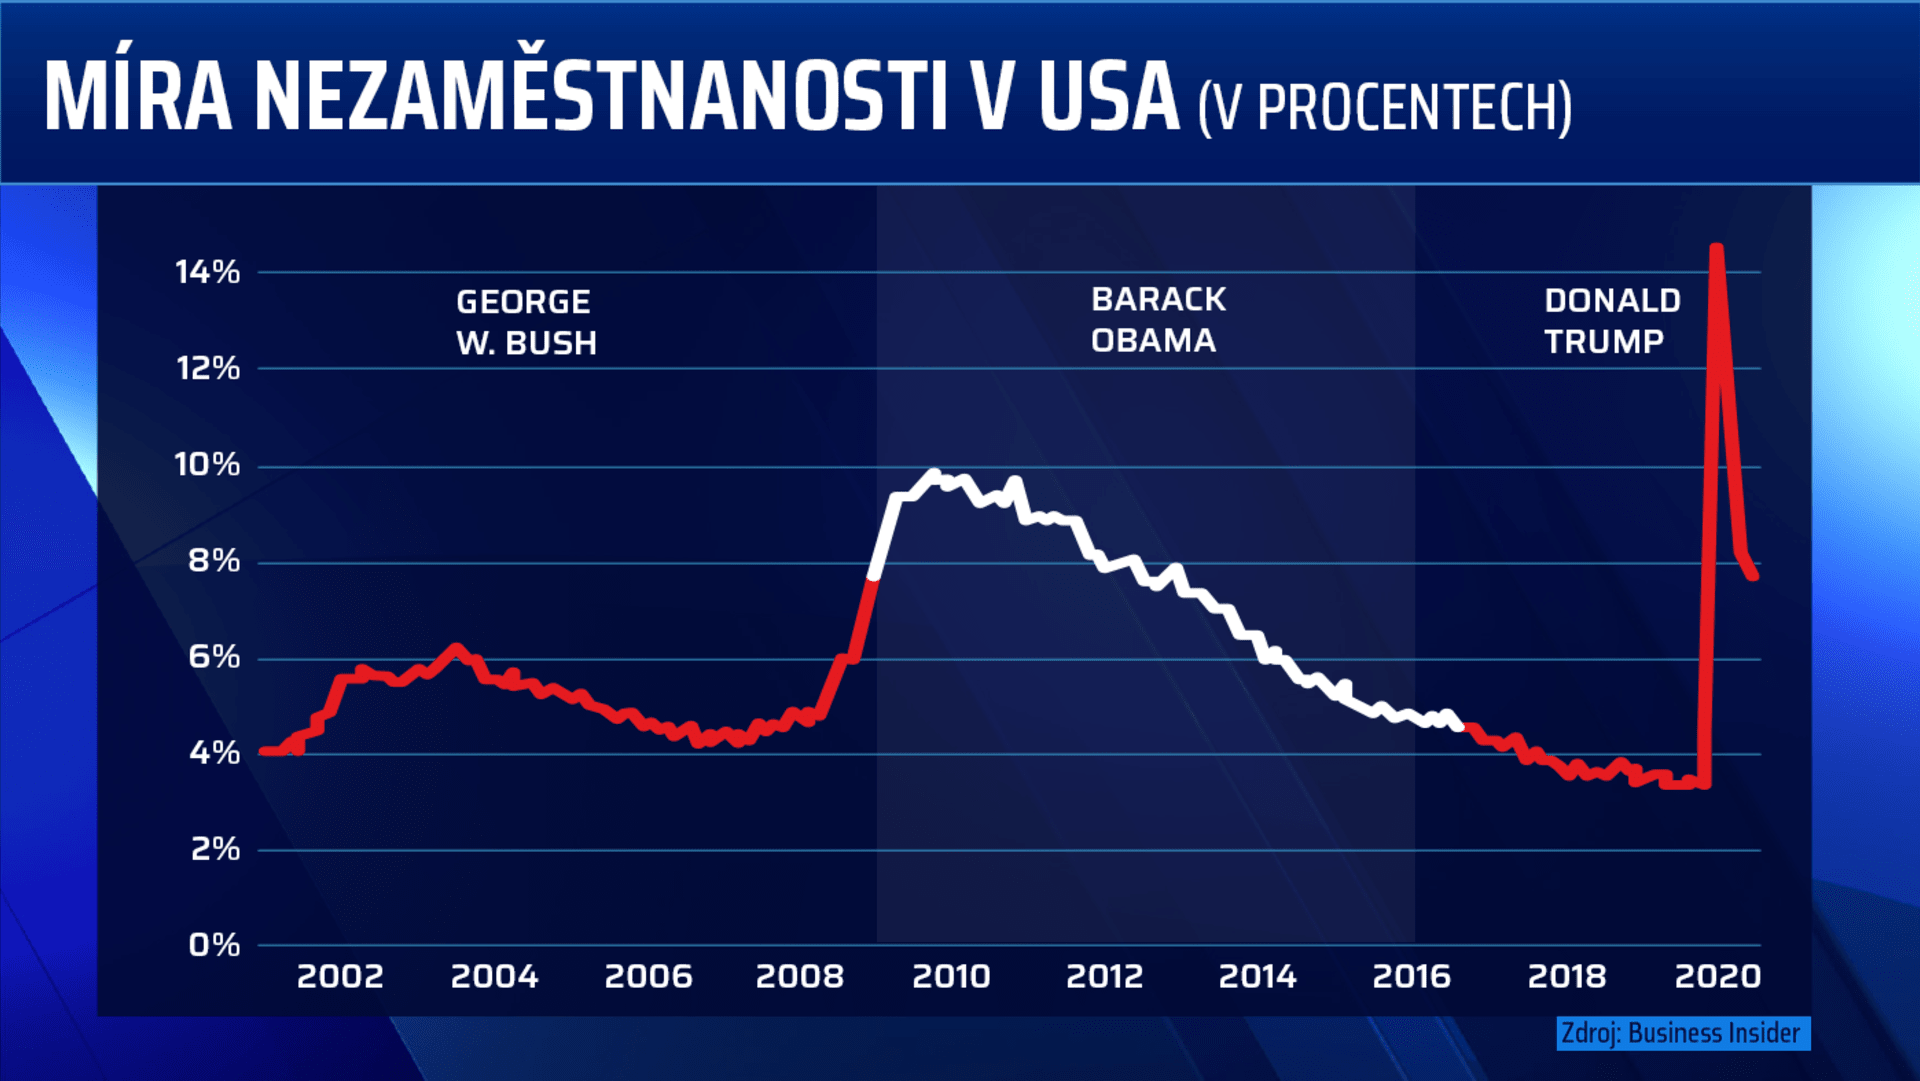 Míra nezaměstnanosti v USA za vlády posledních tří prezidentů.